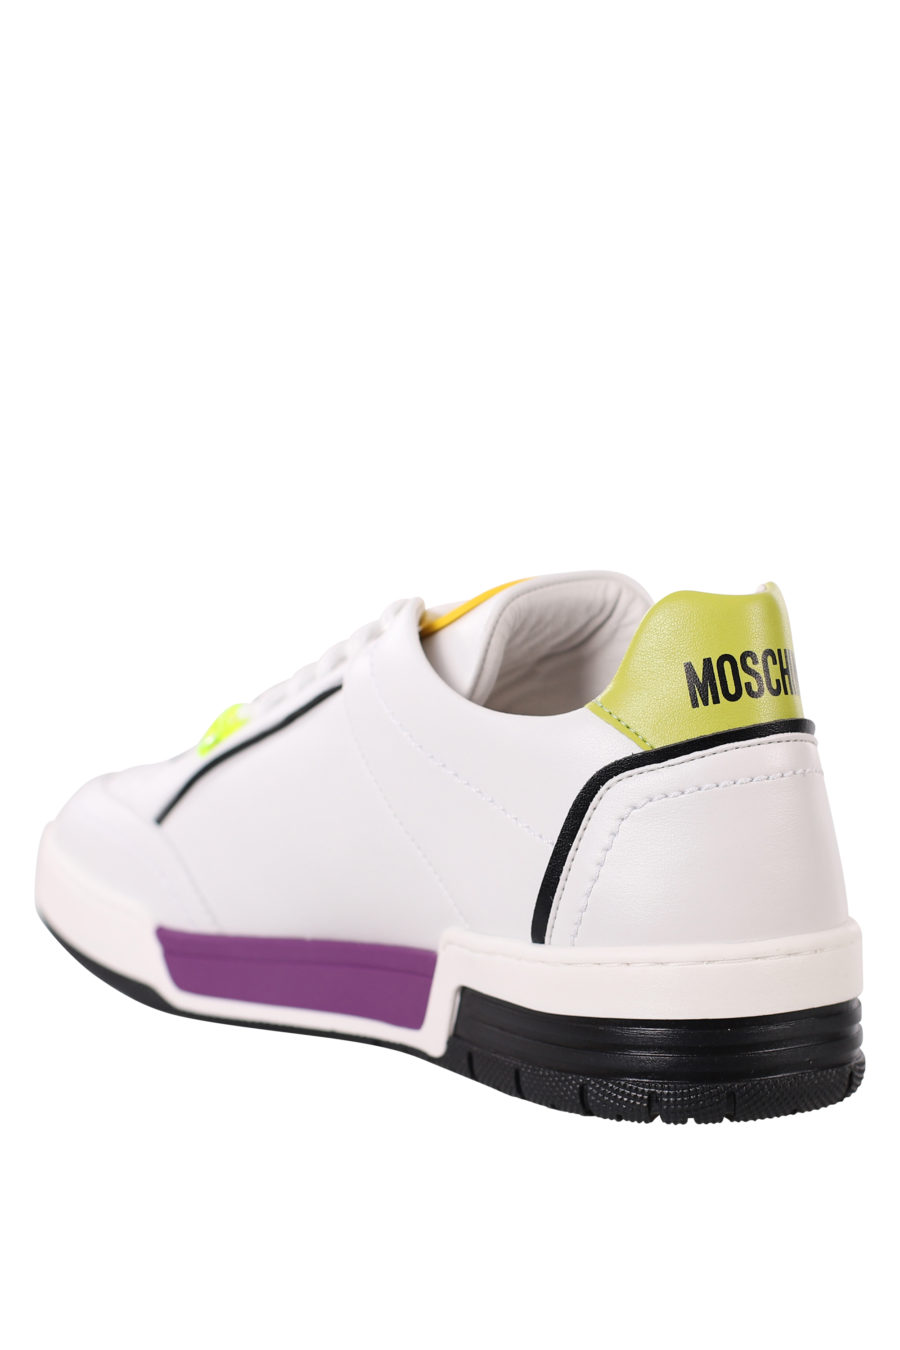 Zapatillas blancas con detalles lila y amarillo - IMG 0378